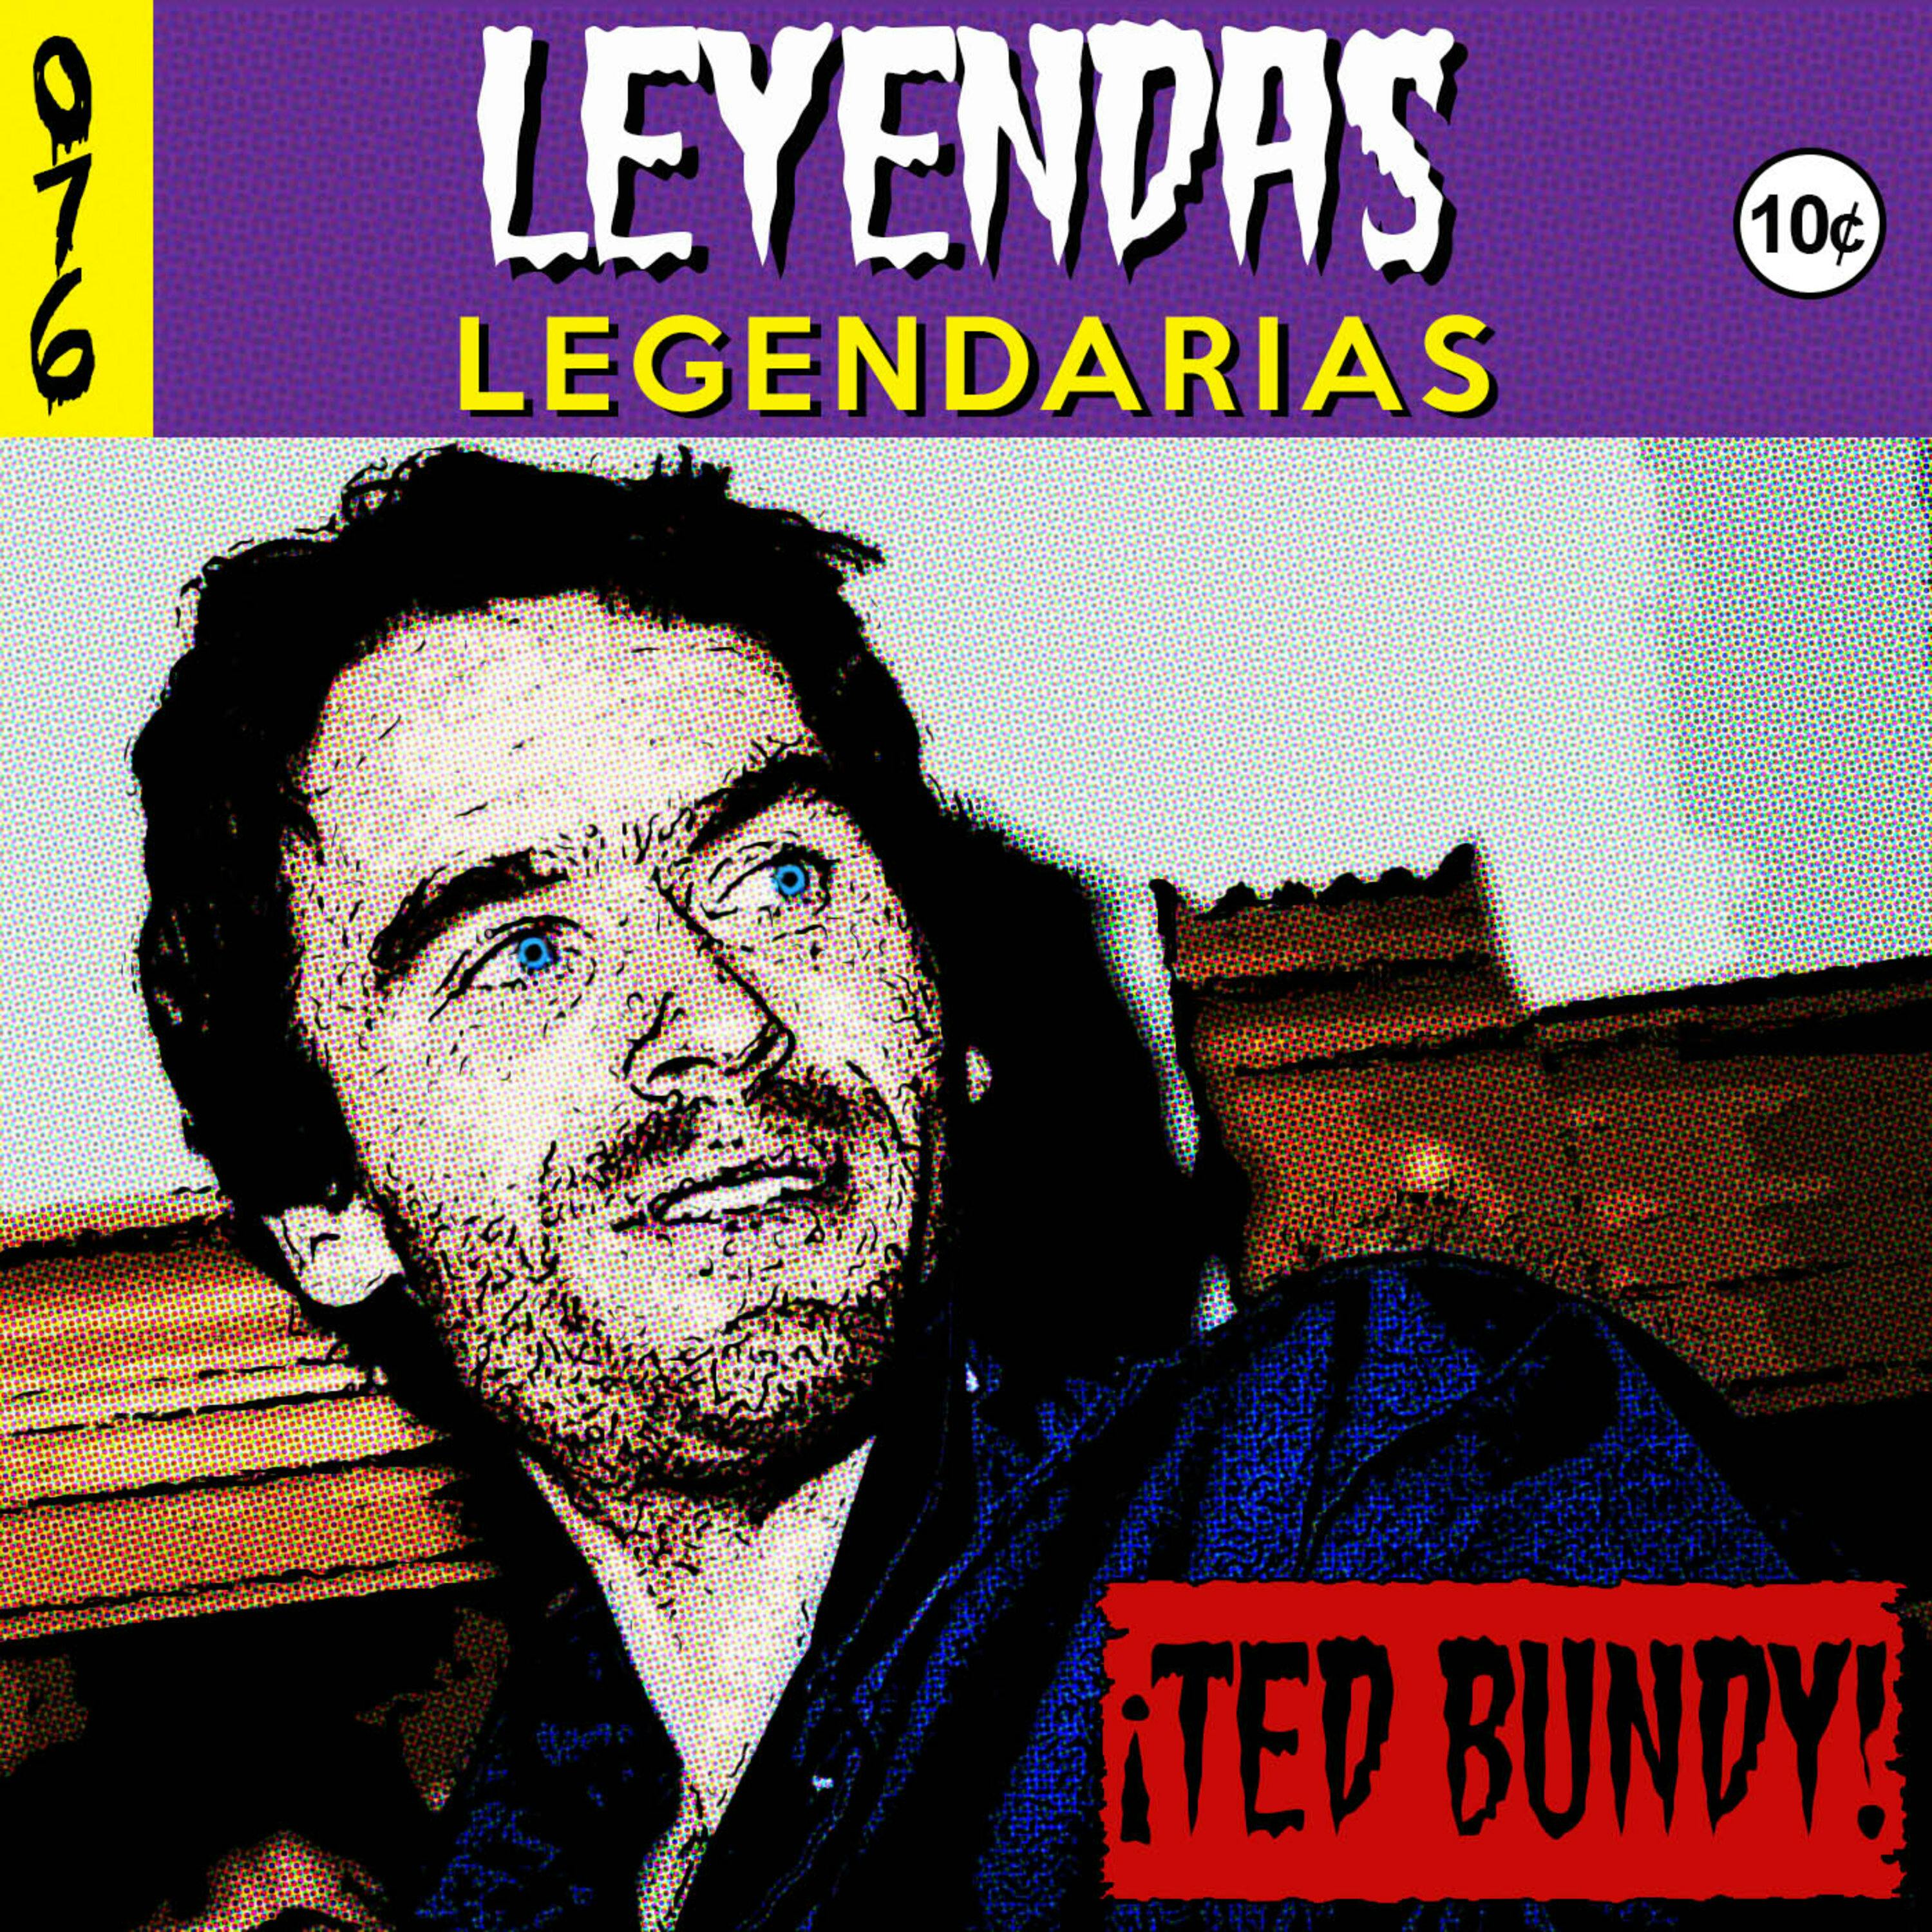 E76: Ted Bundy